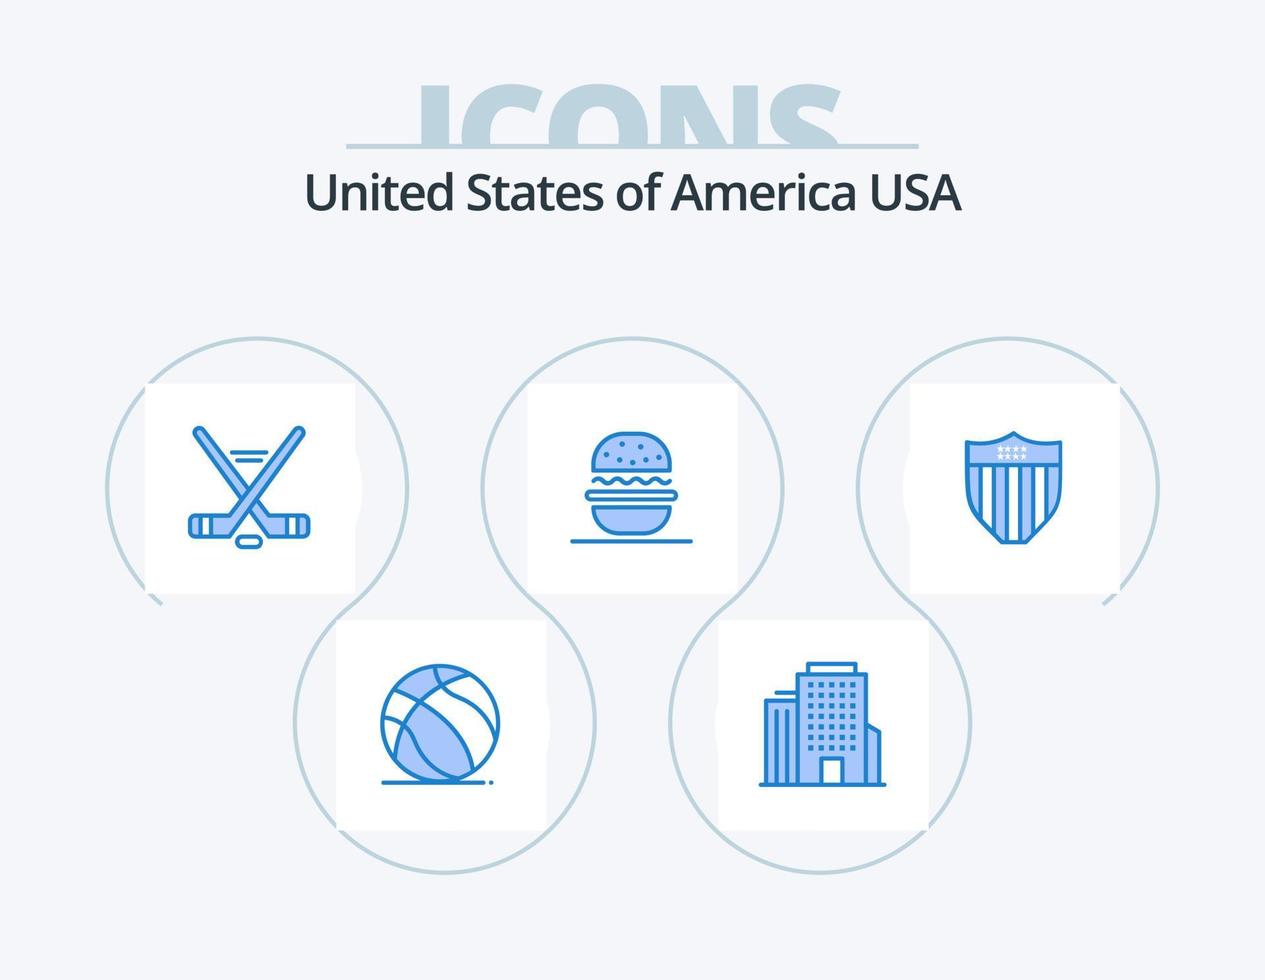 usa blue icon pack 5 diseño de iconos. seguridad americano. deporte de hielo EE.UU. comer vector